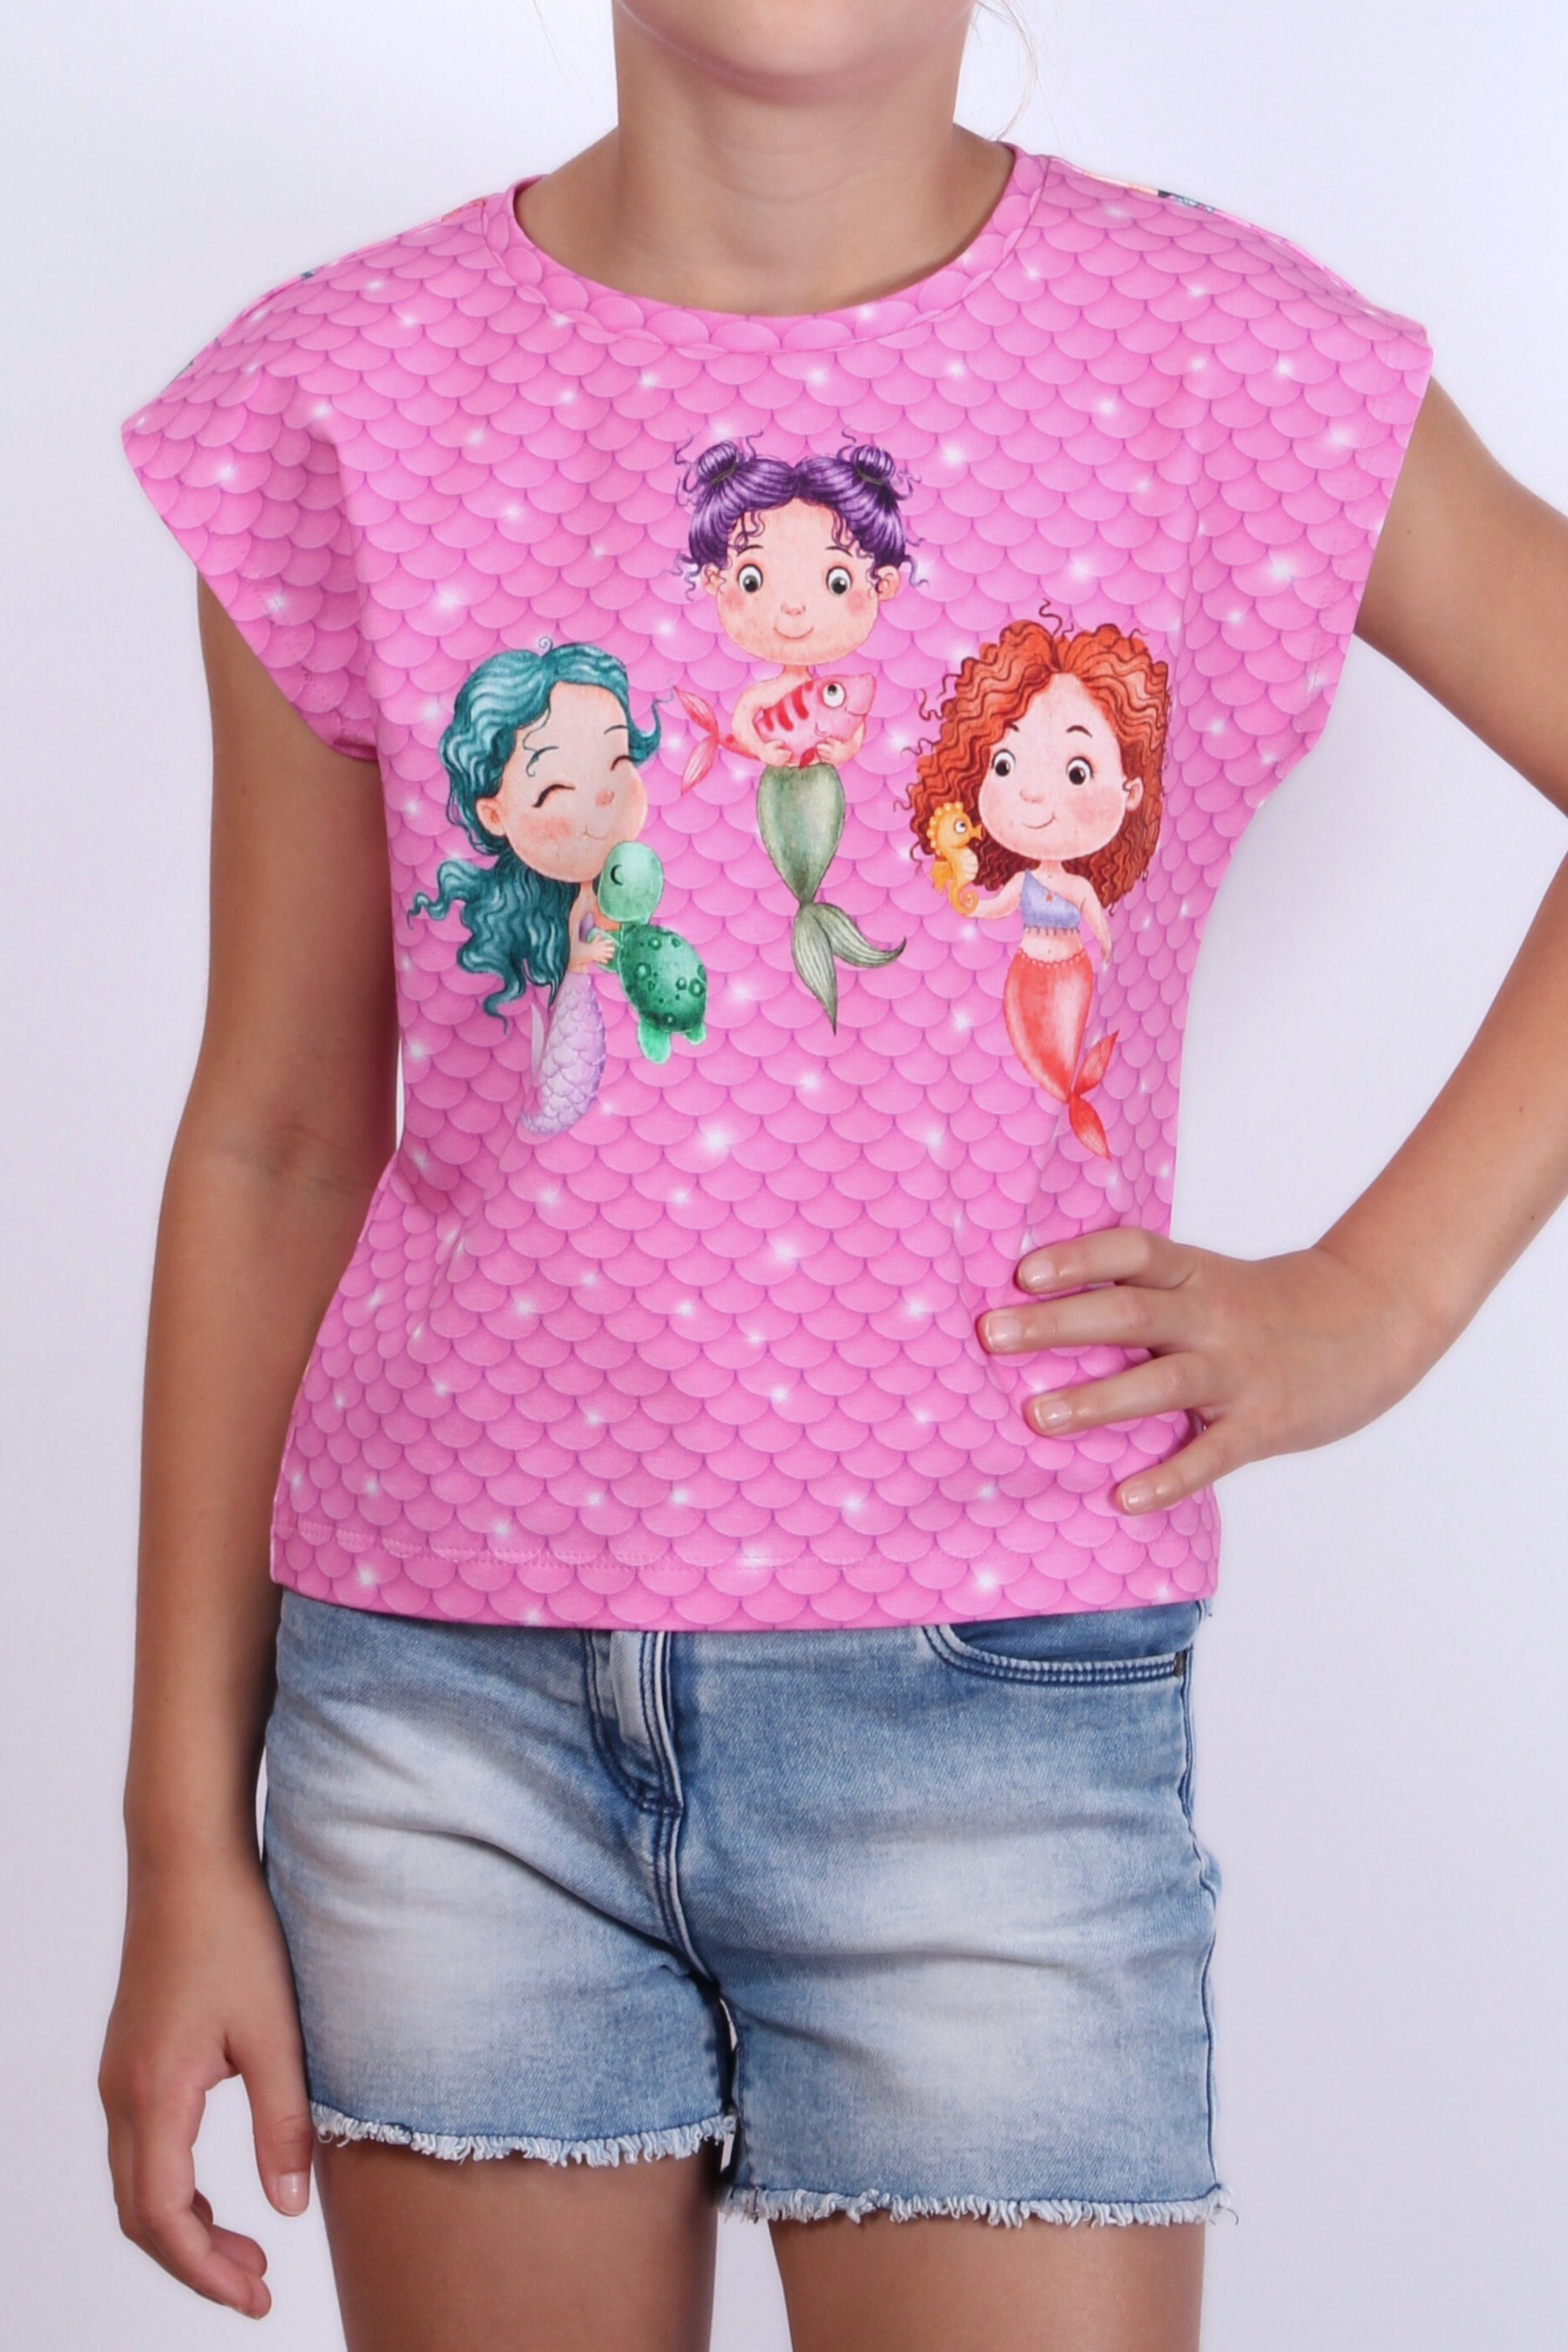 coolismo T-Shirt Print-Shirt für Mädchen Meerjungfrau europäische Baumwolle, Motiv Produktion